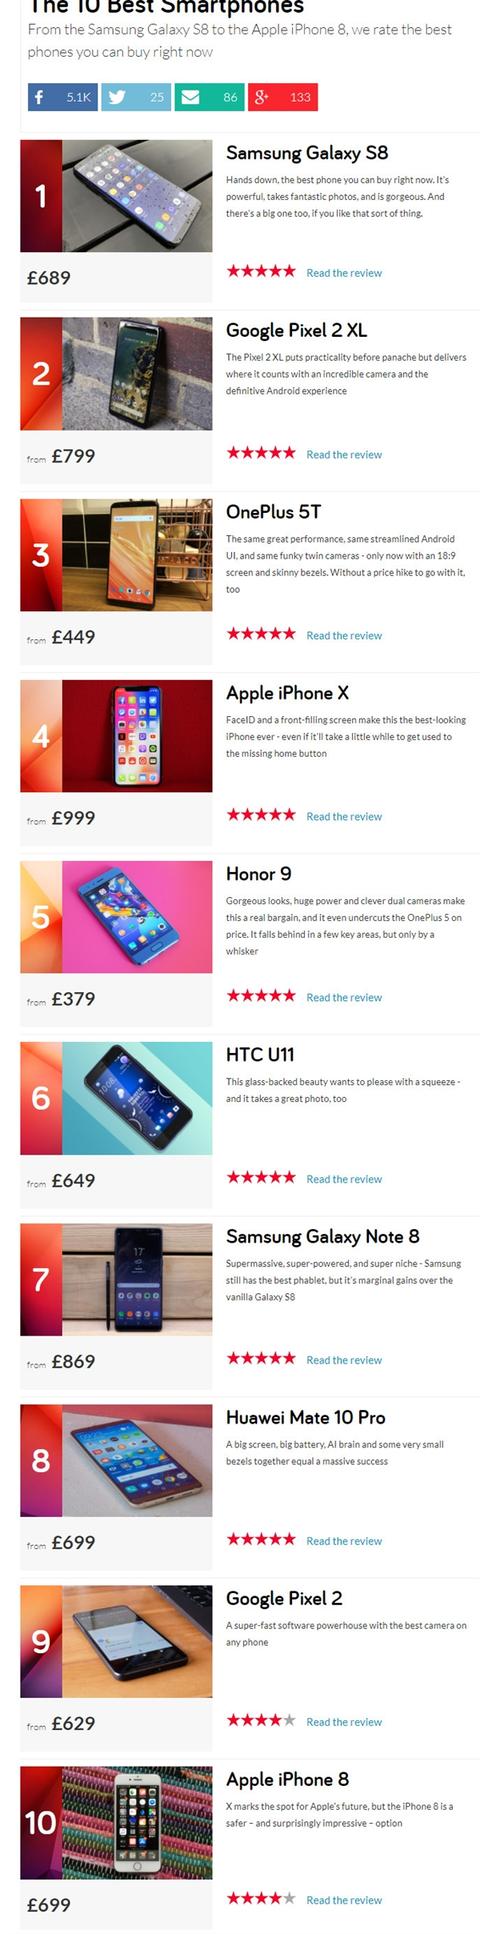 英媒评选最佳智能手机TOP 10：这四款国产手机入榜